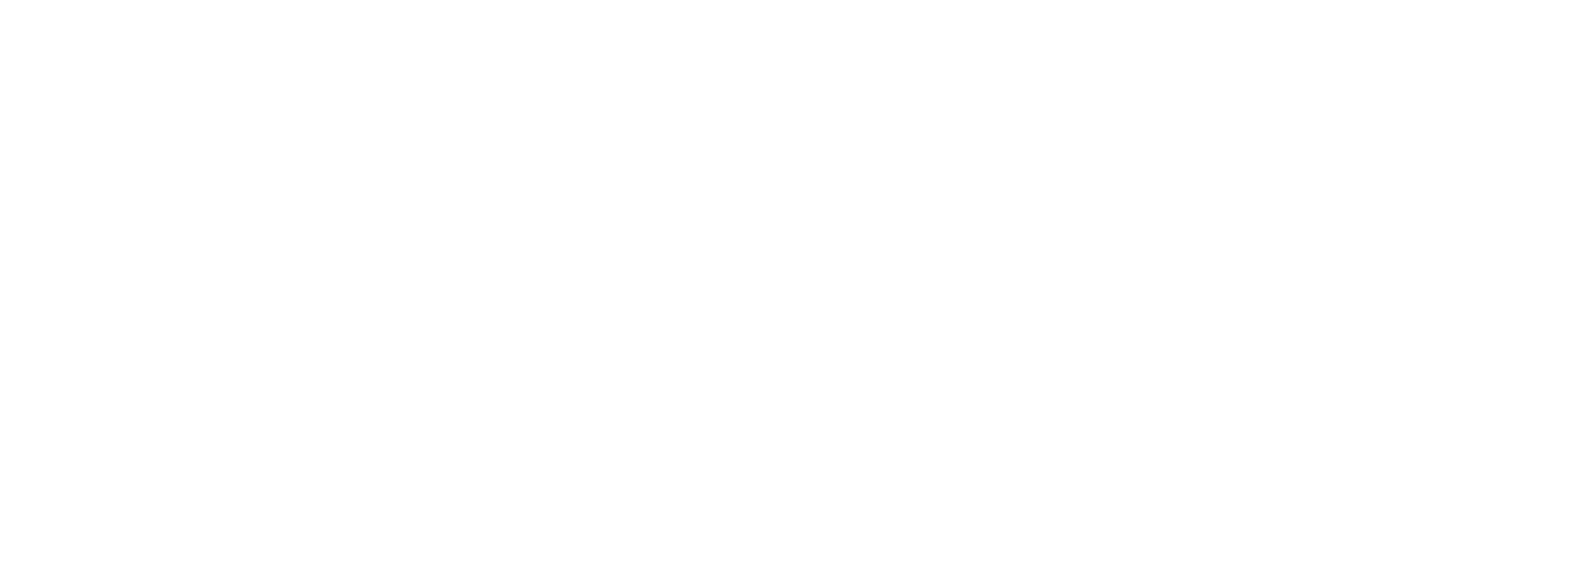 Zymeworks Logo groß für dunkle Hintergründe (transparentes PNG)